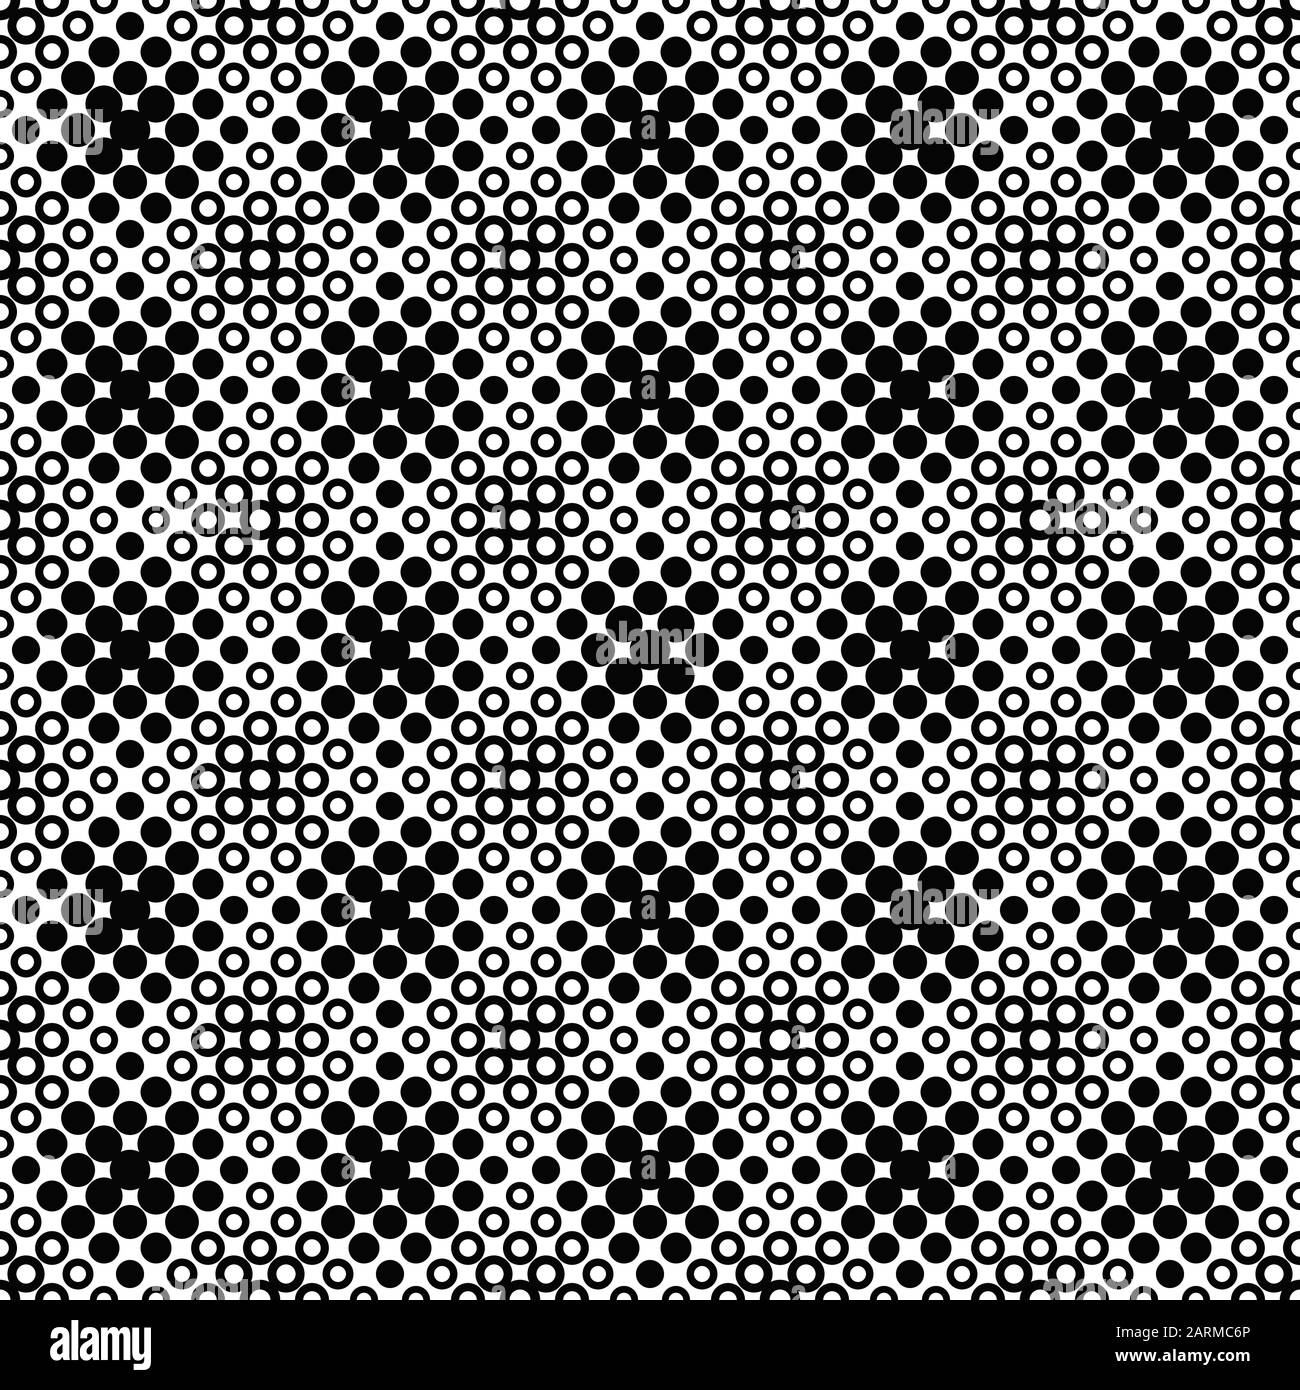 Hintergrund mit nahtlosem Kreismuster - abstraktes Schwarz-Weiß-Vektordesign aus Kreisen Stock Vektor